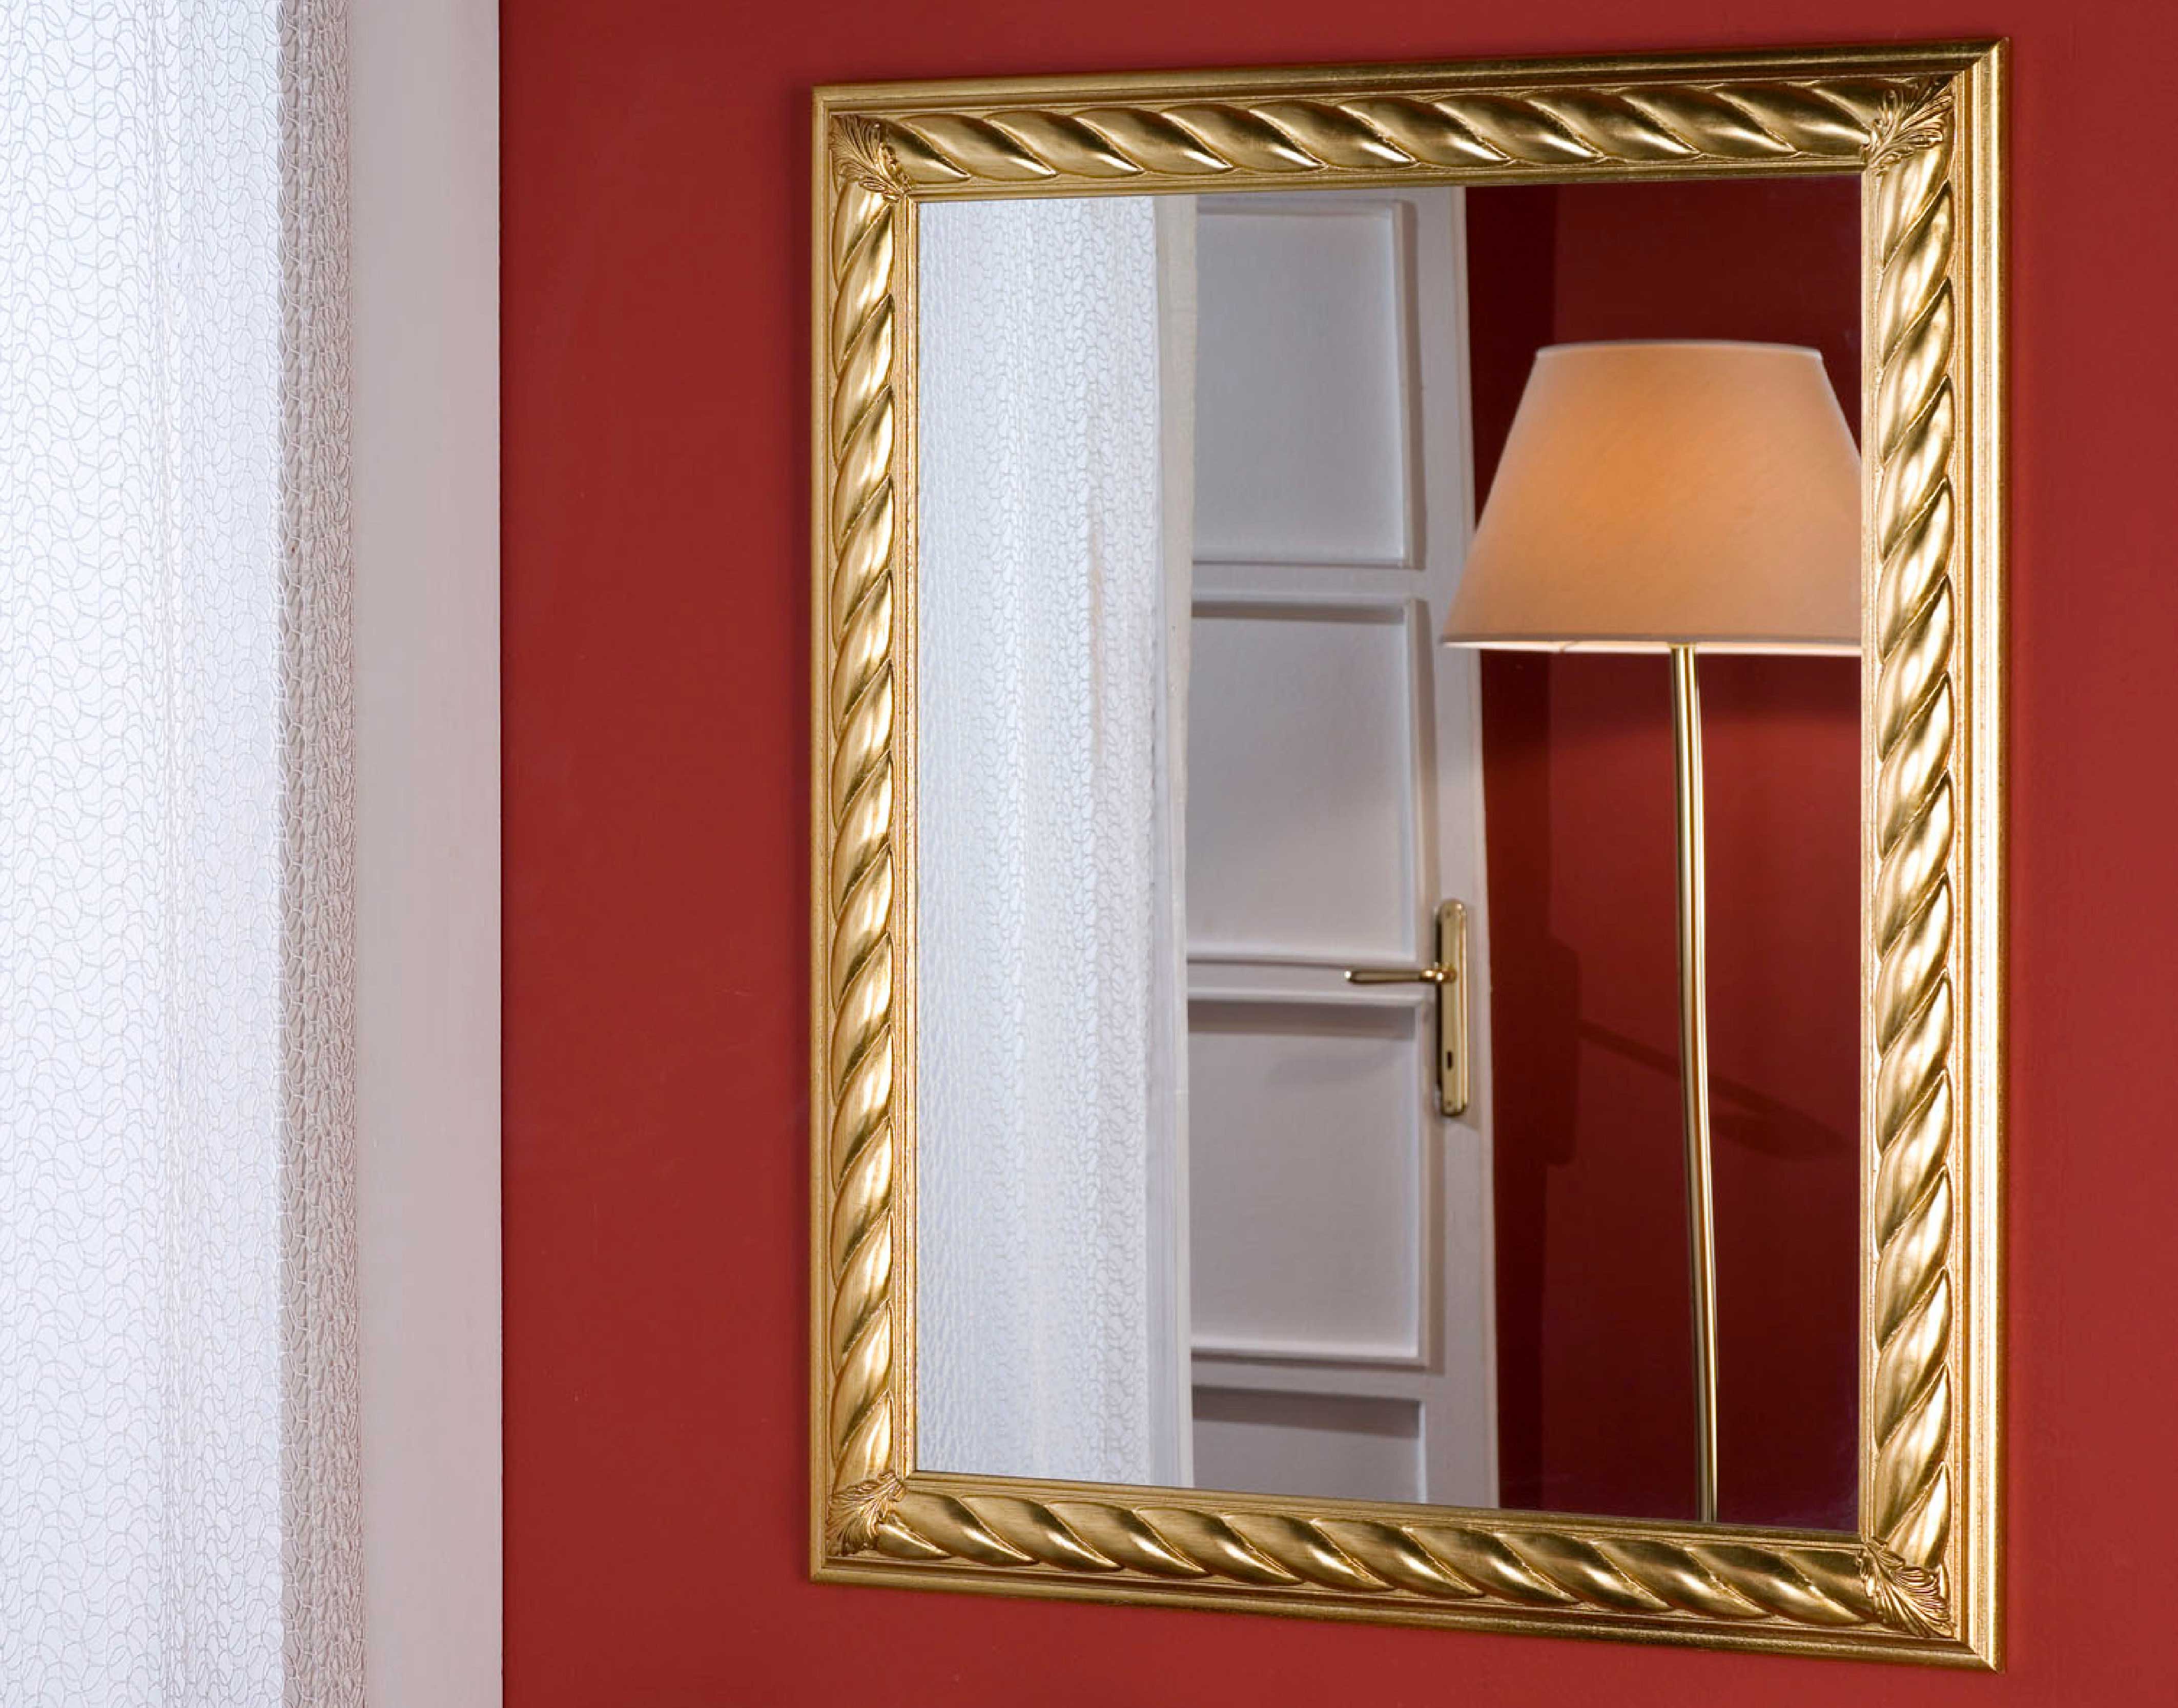 Wandspiegel Modell Ravenna, Finishing: Blattgold, Spiegel: Facettenspiegel, Style: klassisch, an der Wand